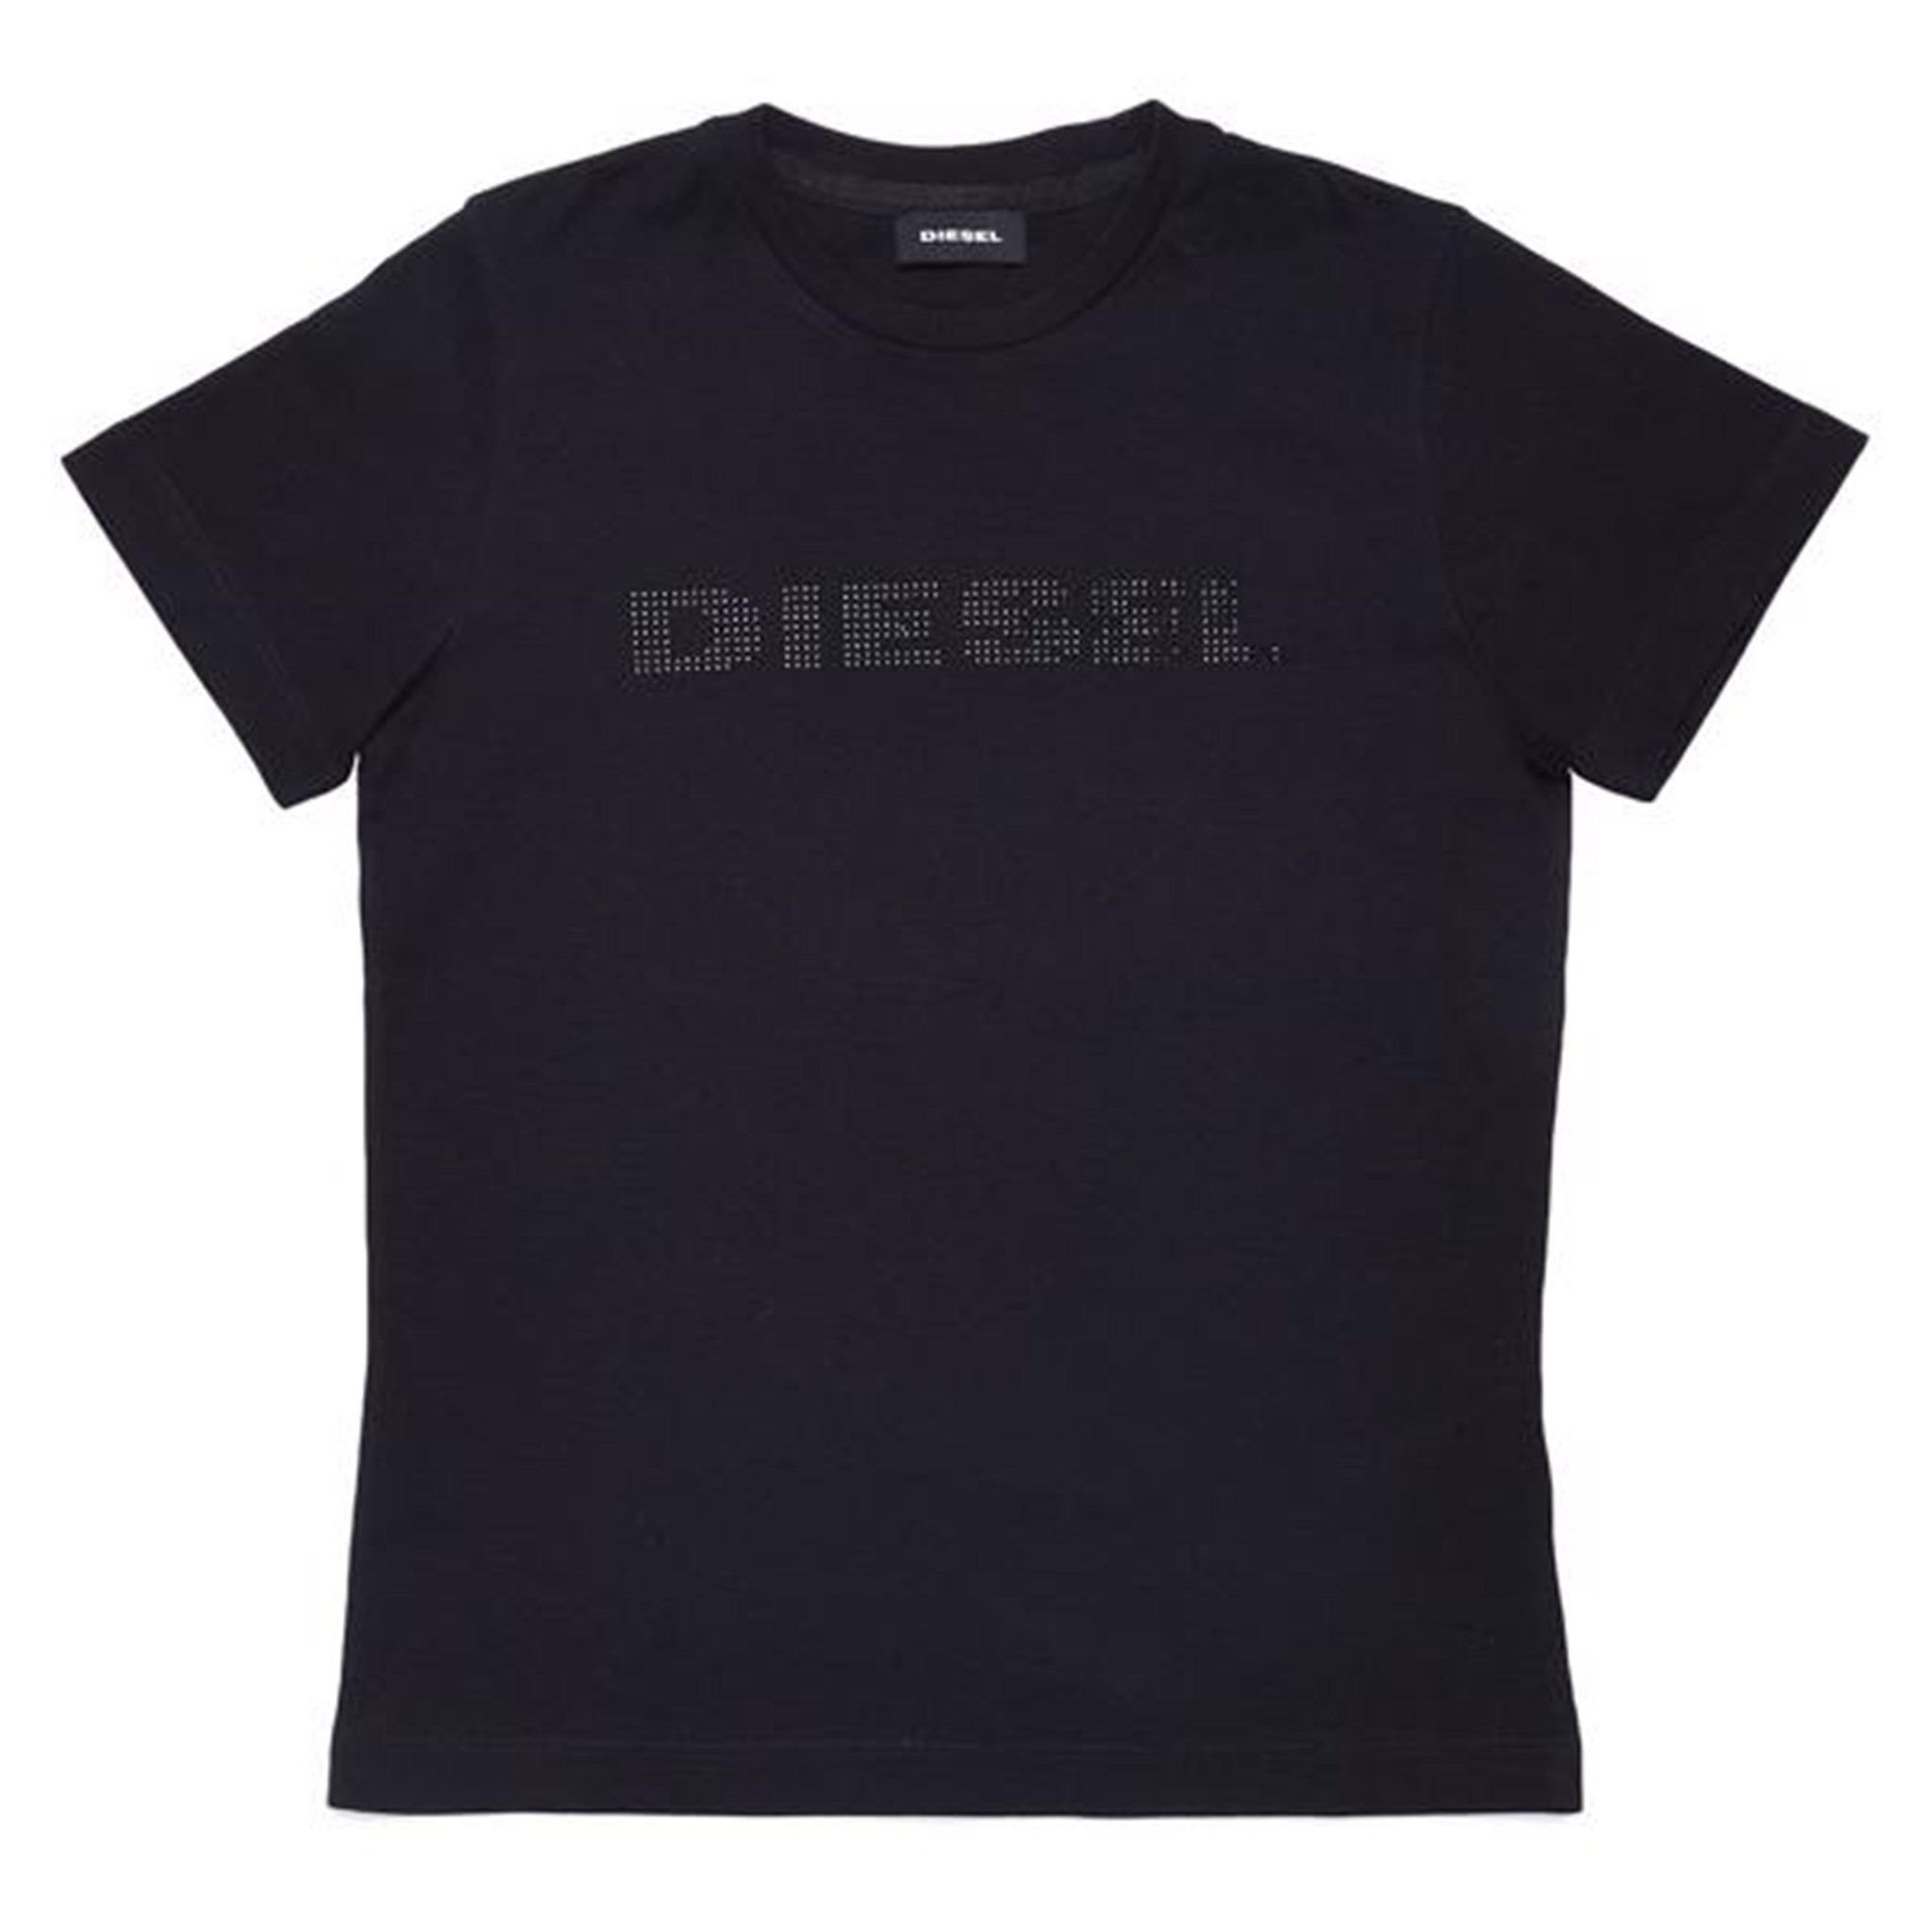 Diesel Laviay Maglietta T-shirt Sort - Str. 6 år